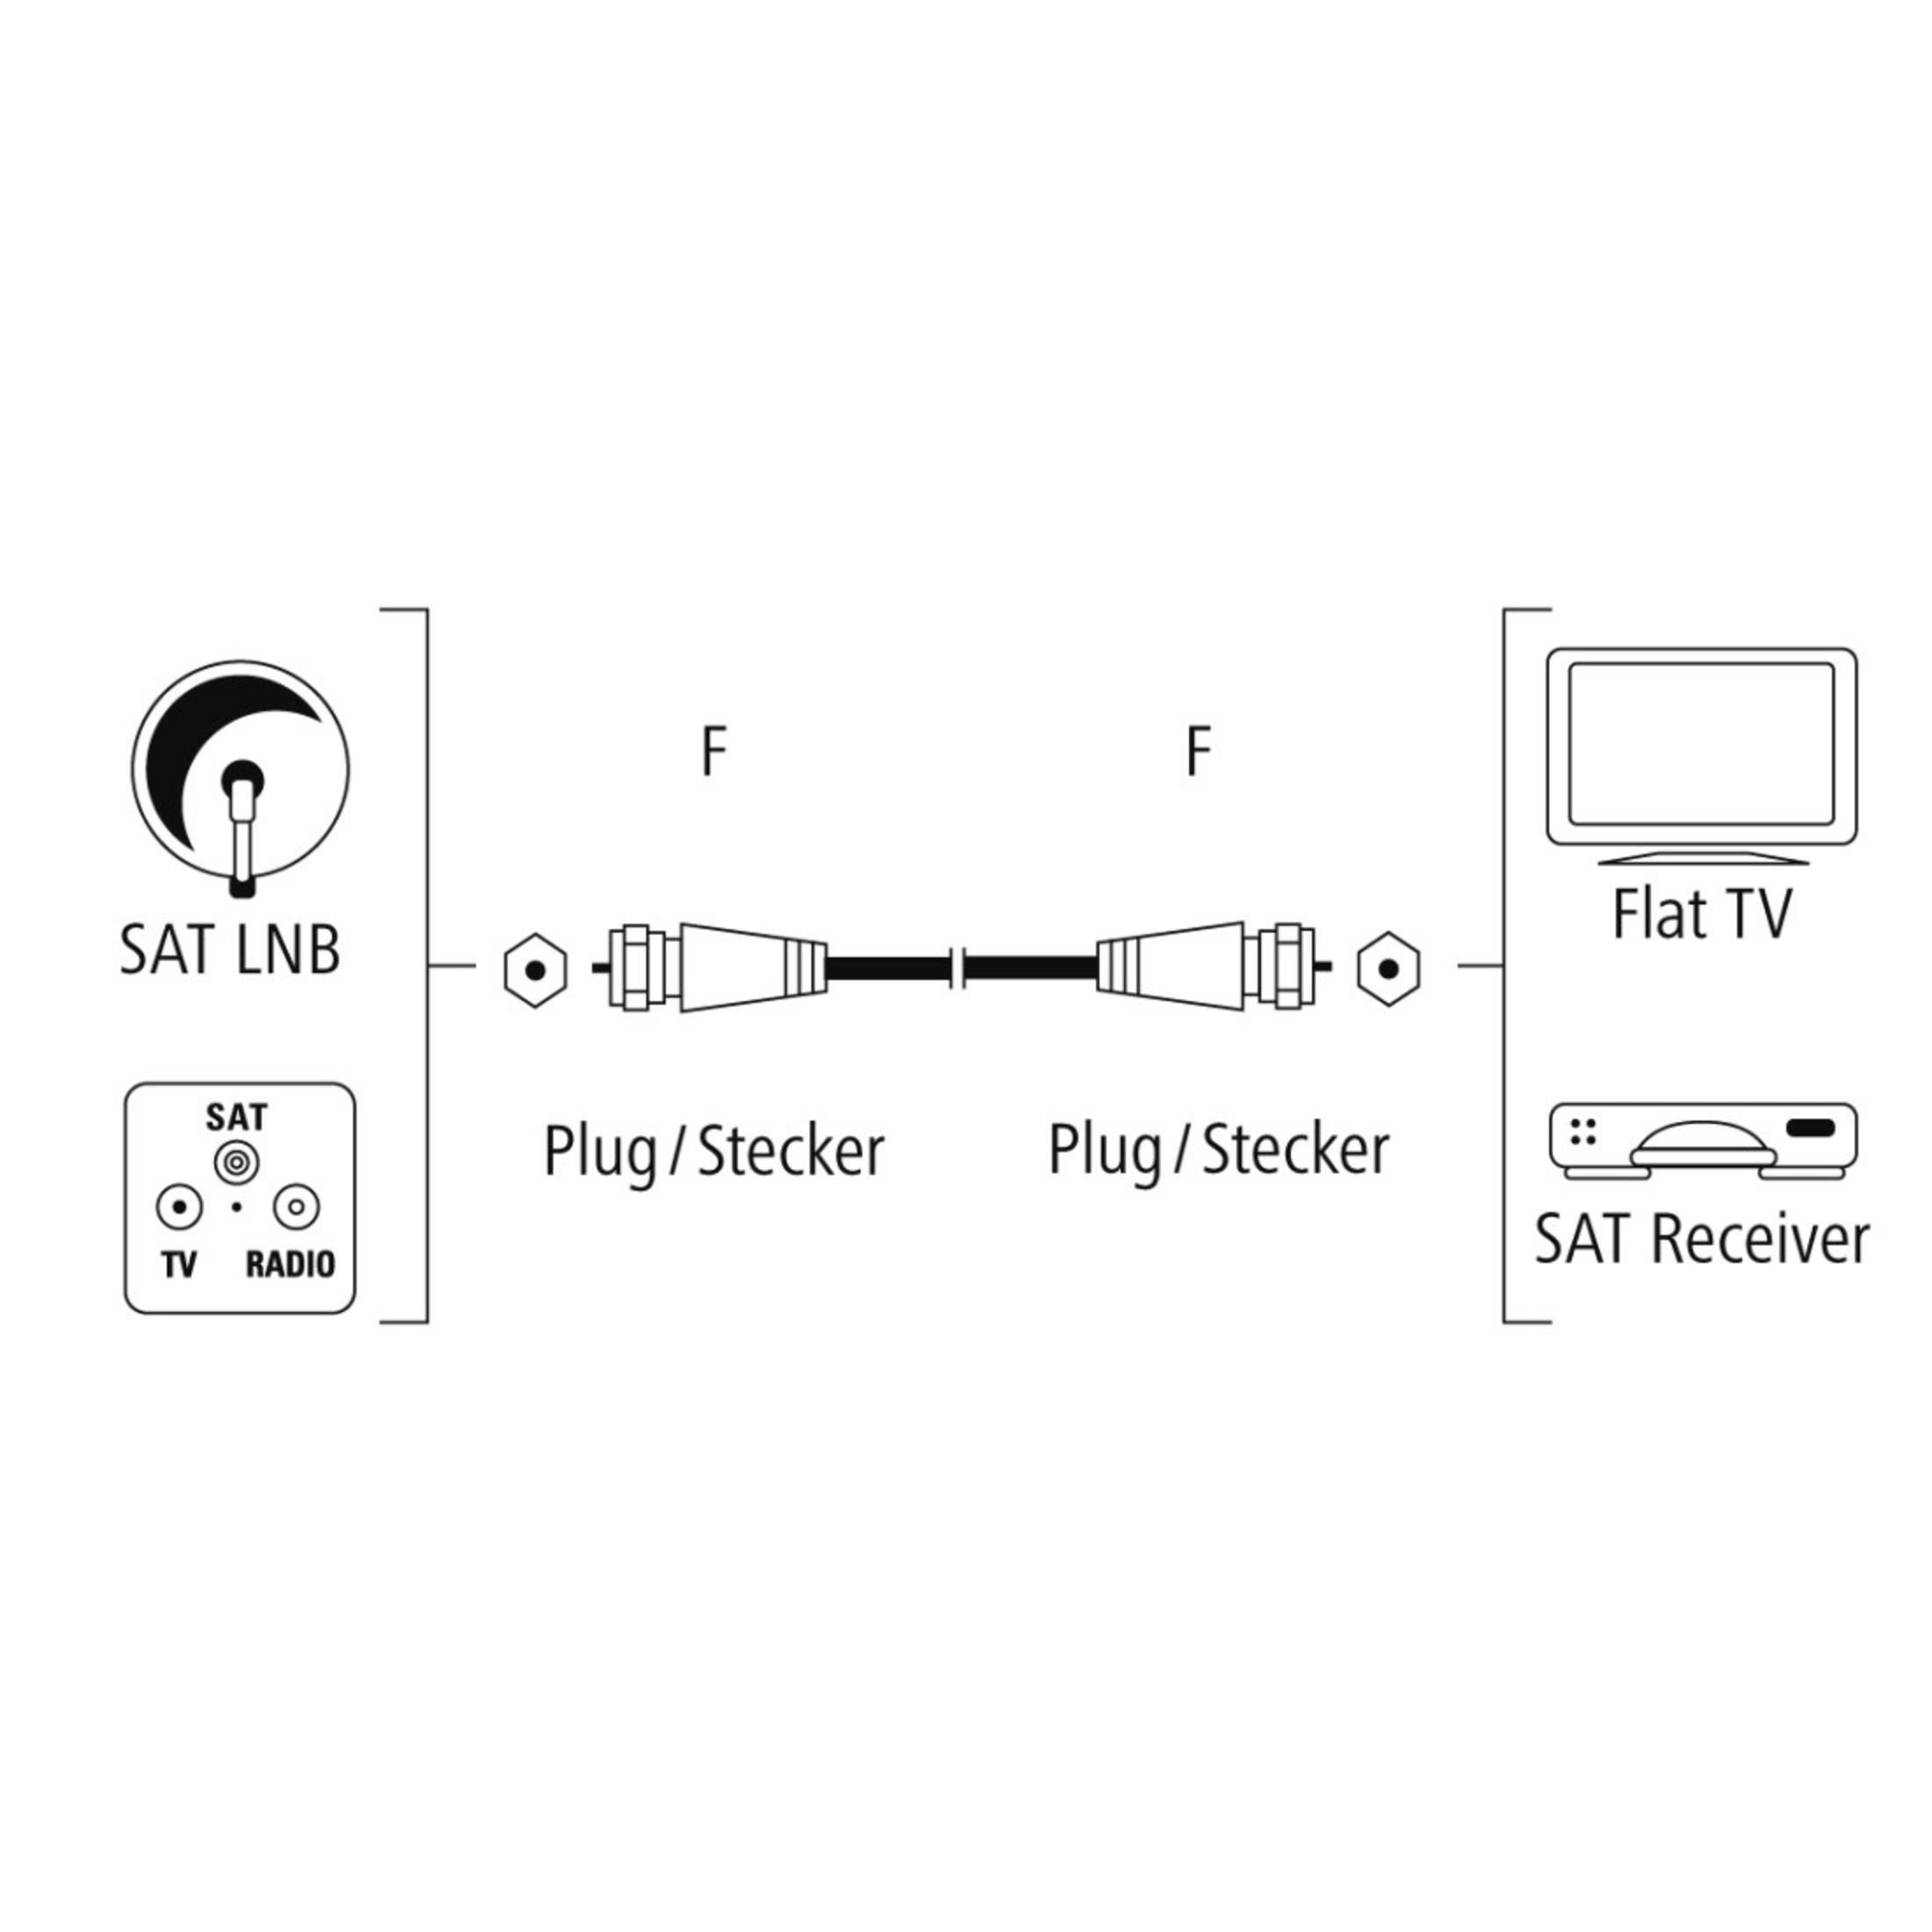 HAMA F-Stecker SAT-Anschlusskabel F-Stecker -